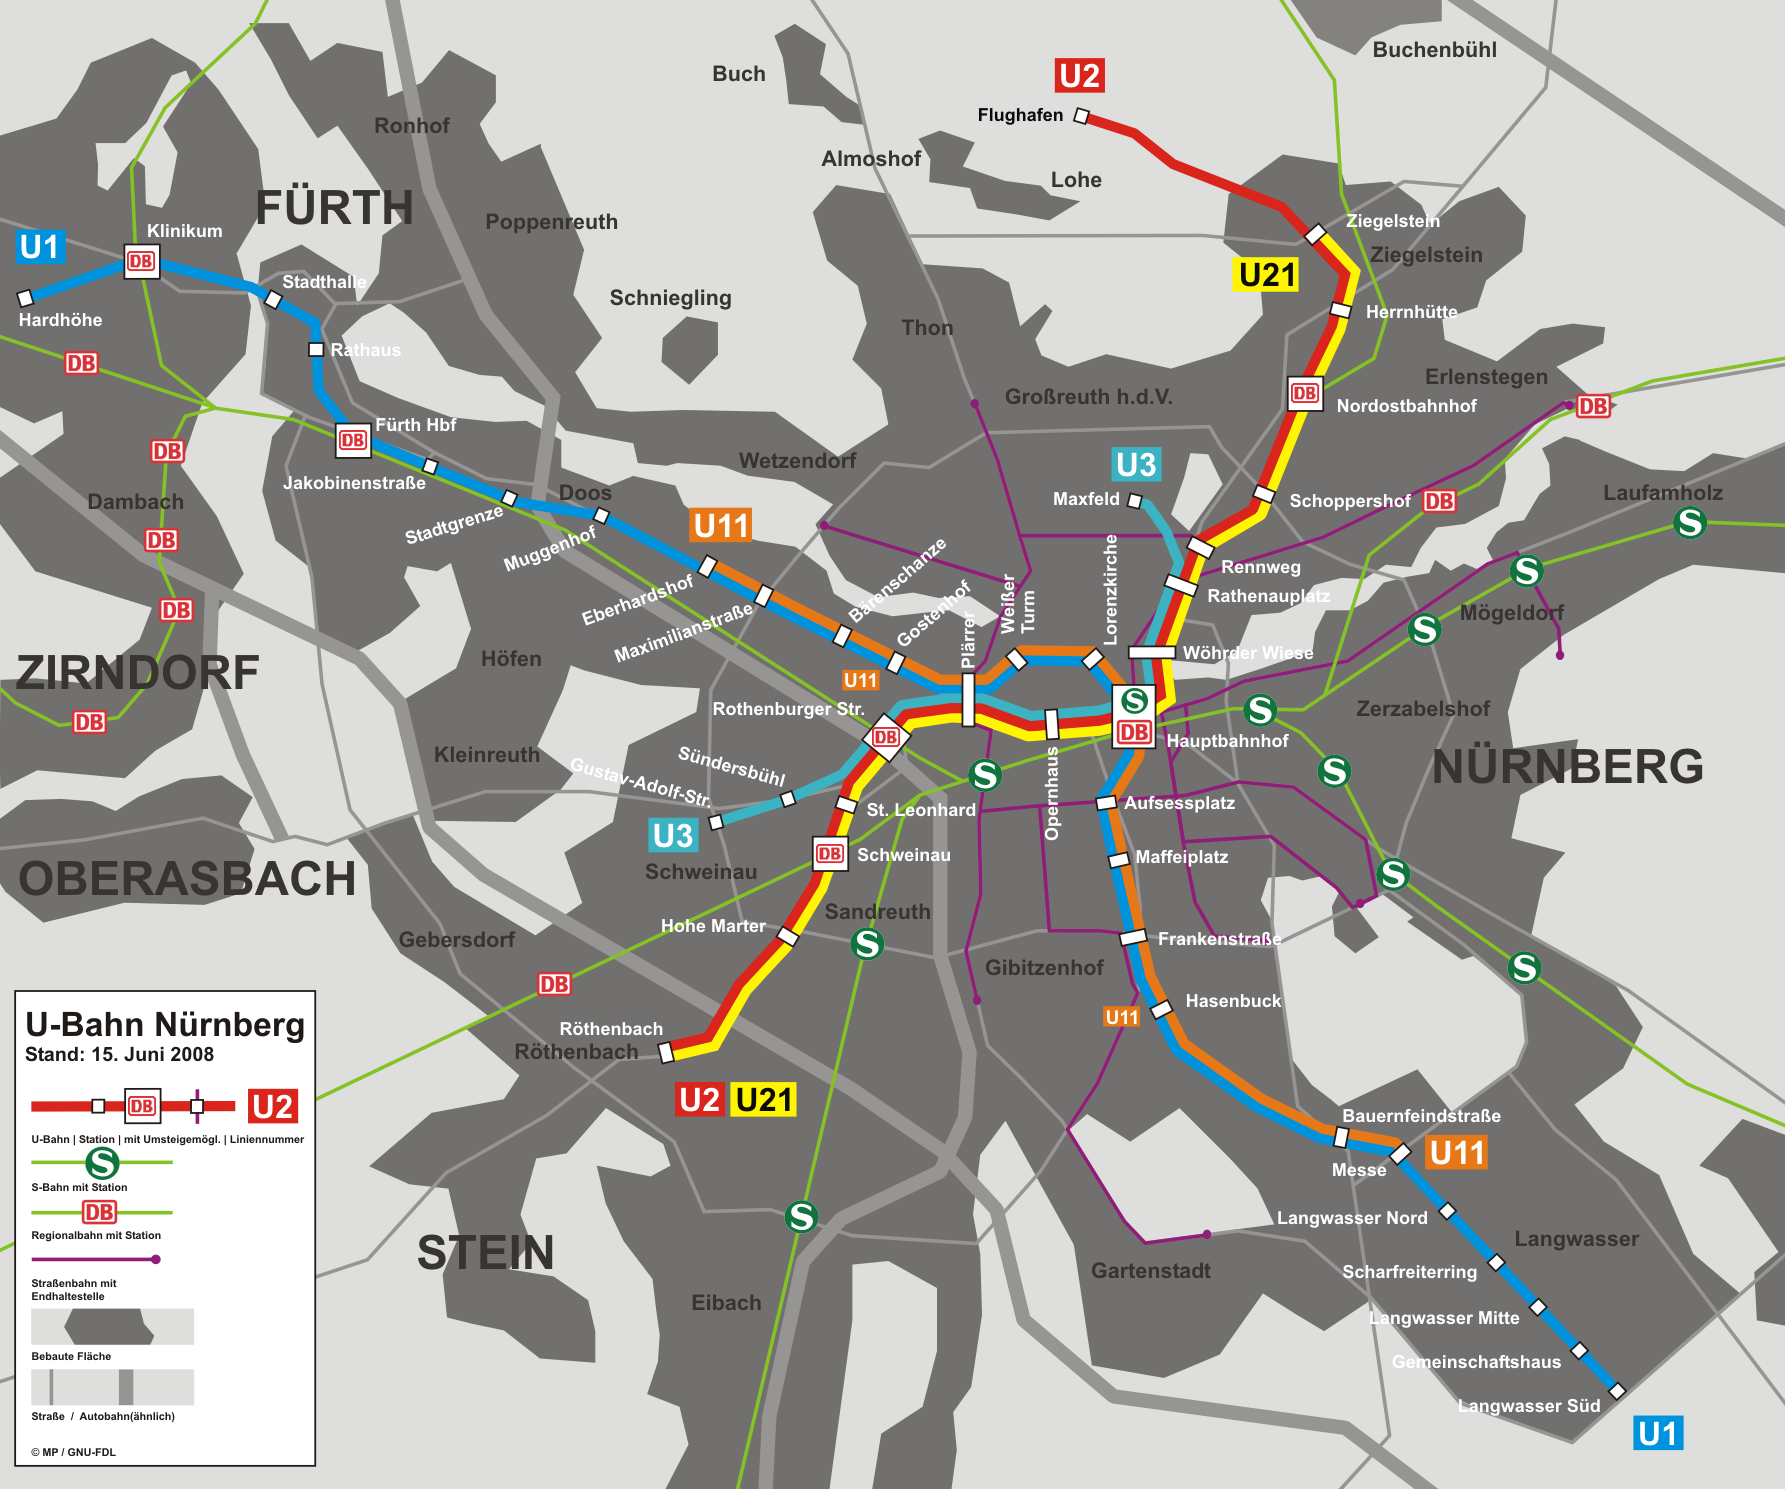 U Bahn Nuremberg metro map, Germany